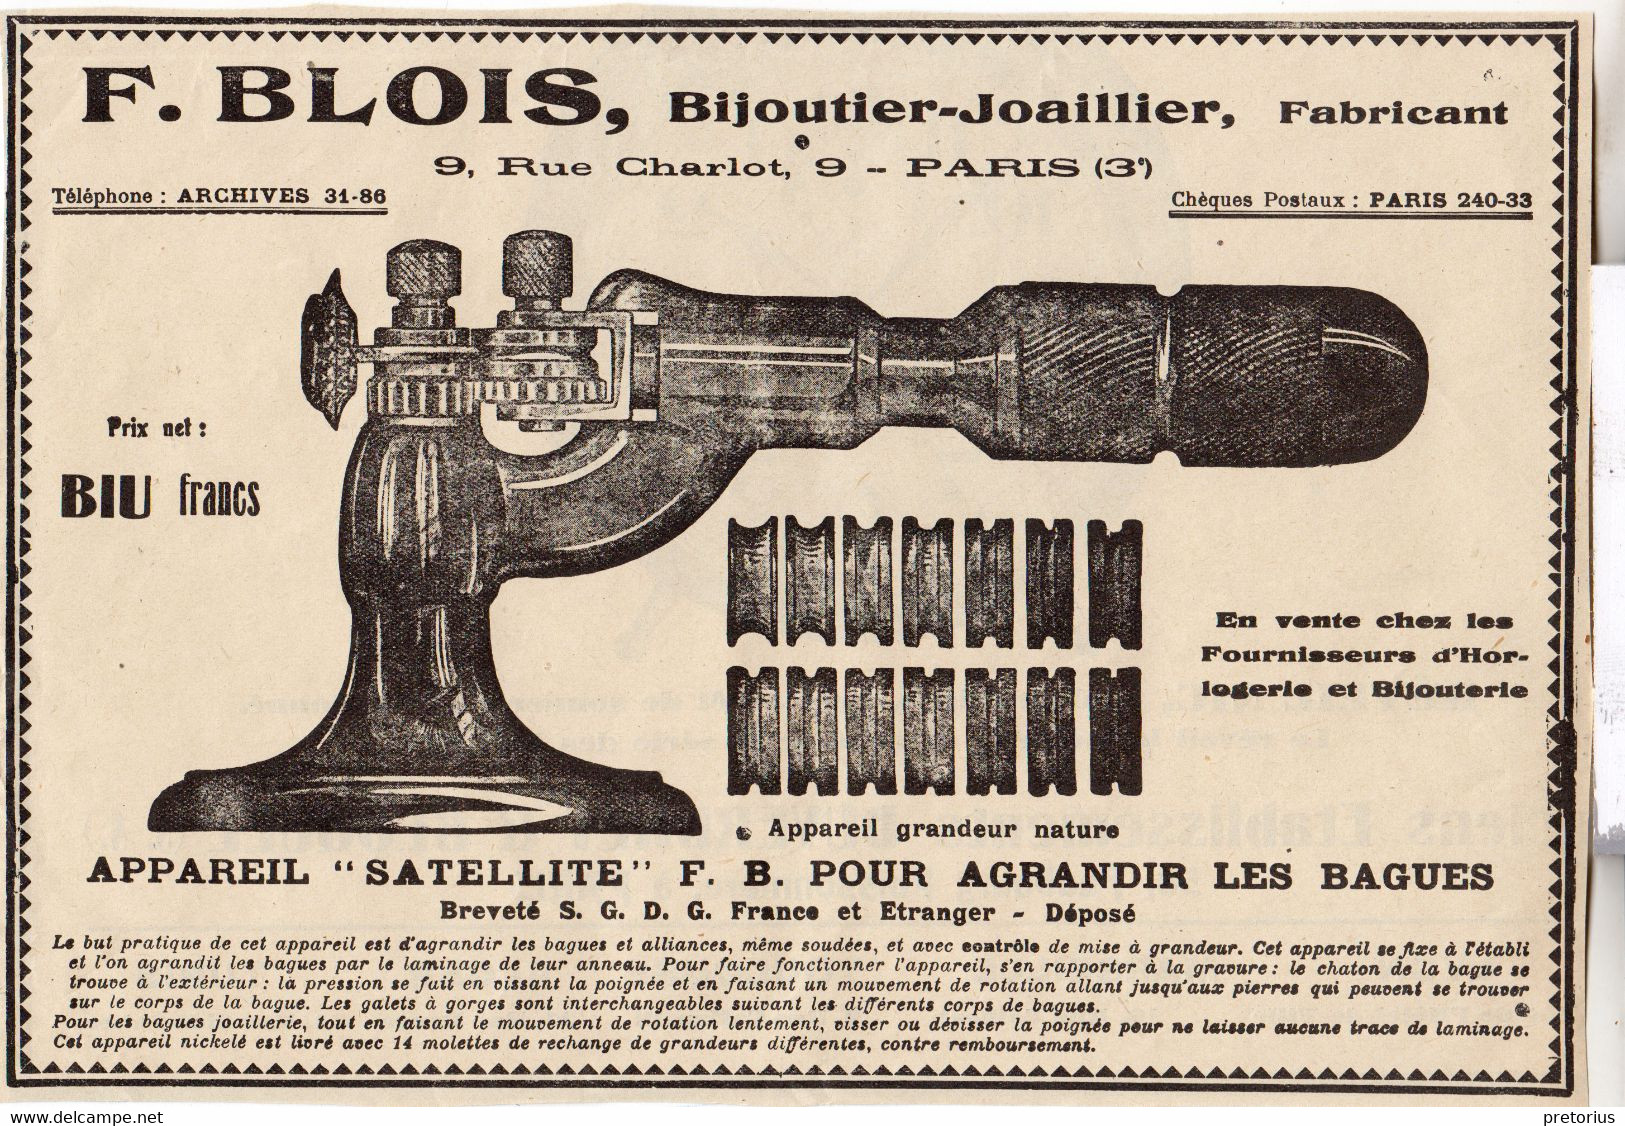 RARE PUB SUR PAPIER - 1927 - APPAREIL SATELLITE POUR AGRANDIR LES BAGUES - F. BLOIS - BIJOUTIER JOAILLIER - PARIS - Supplies And Equipment